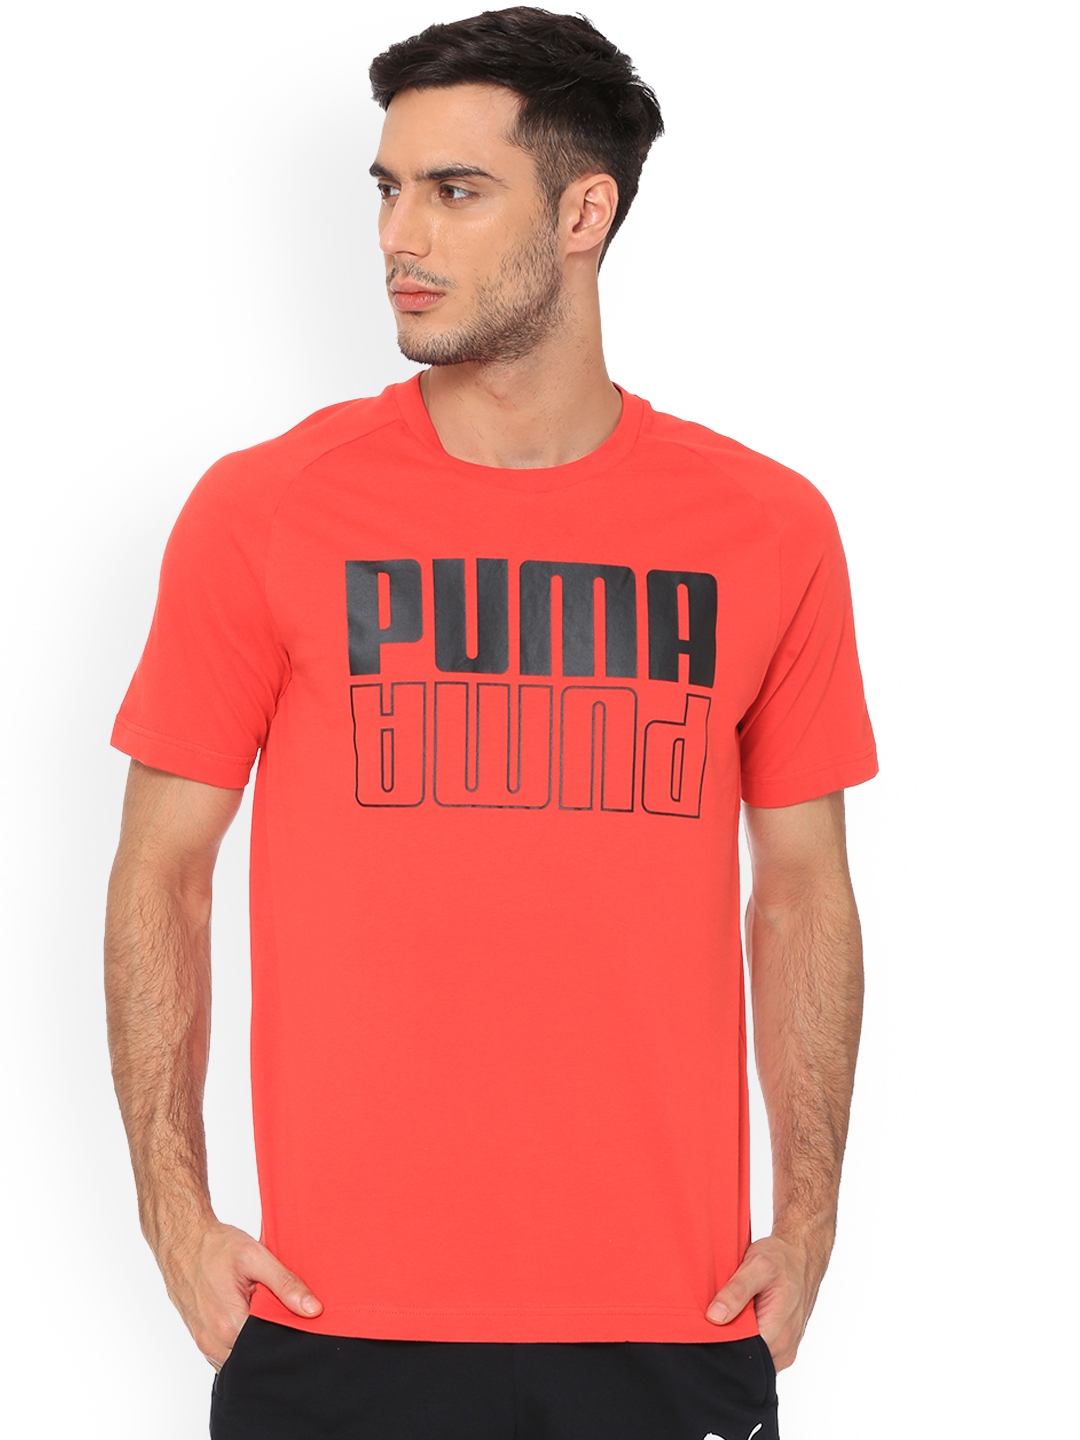 puma round neck t shirts full sleeve